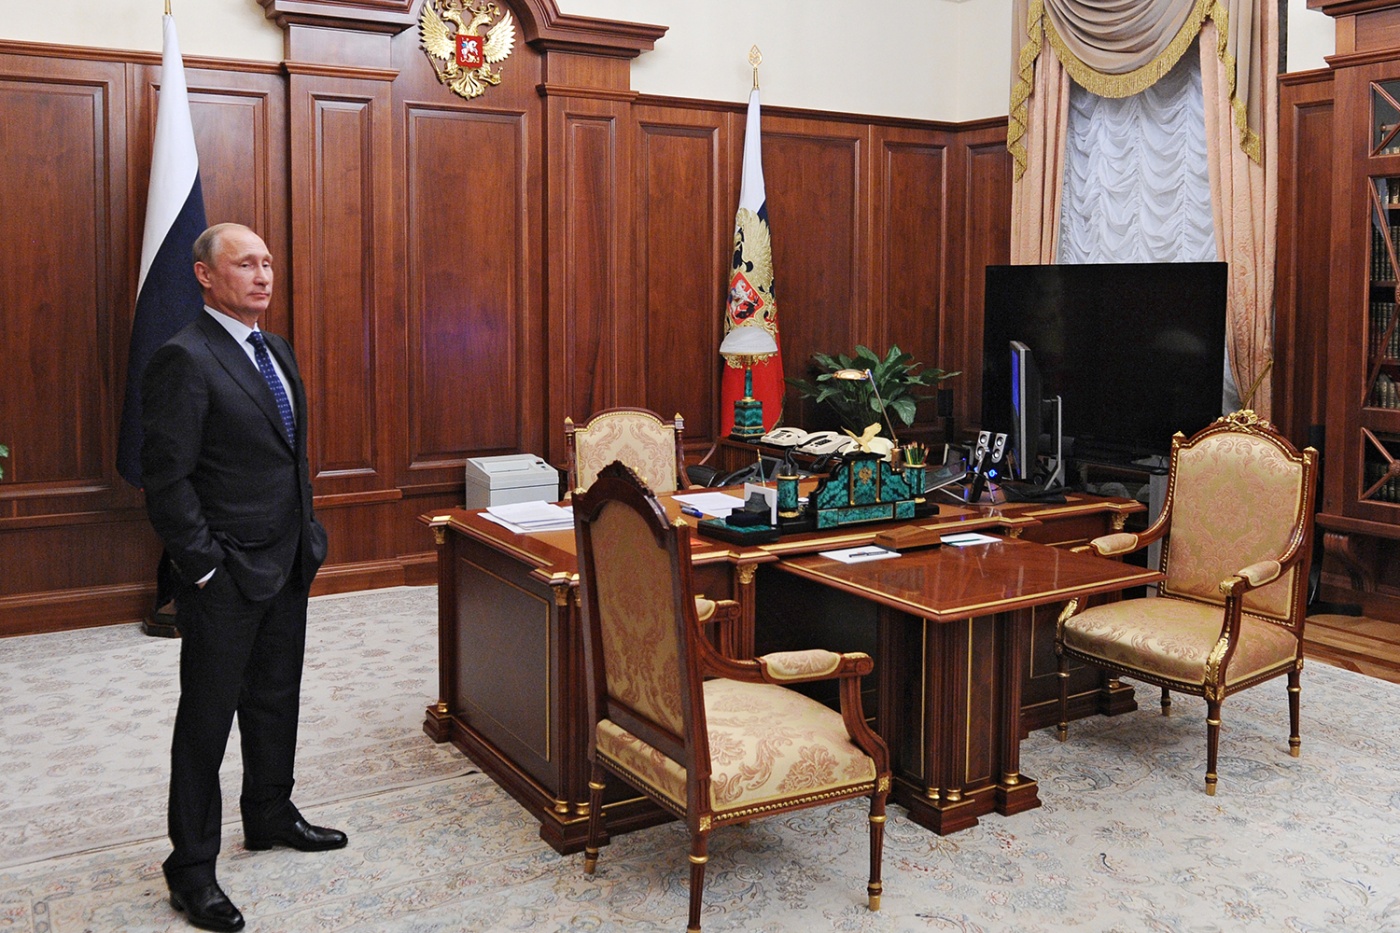 Операция "преемник": Politico составило свой список кандидатов на кресло российского президента